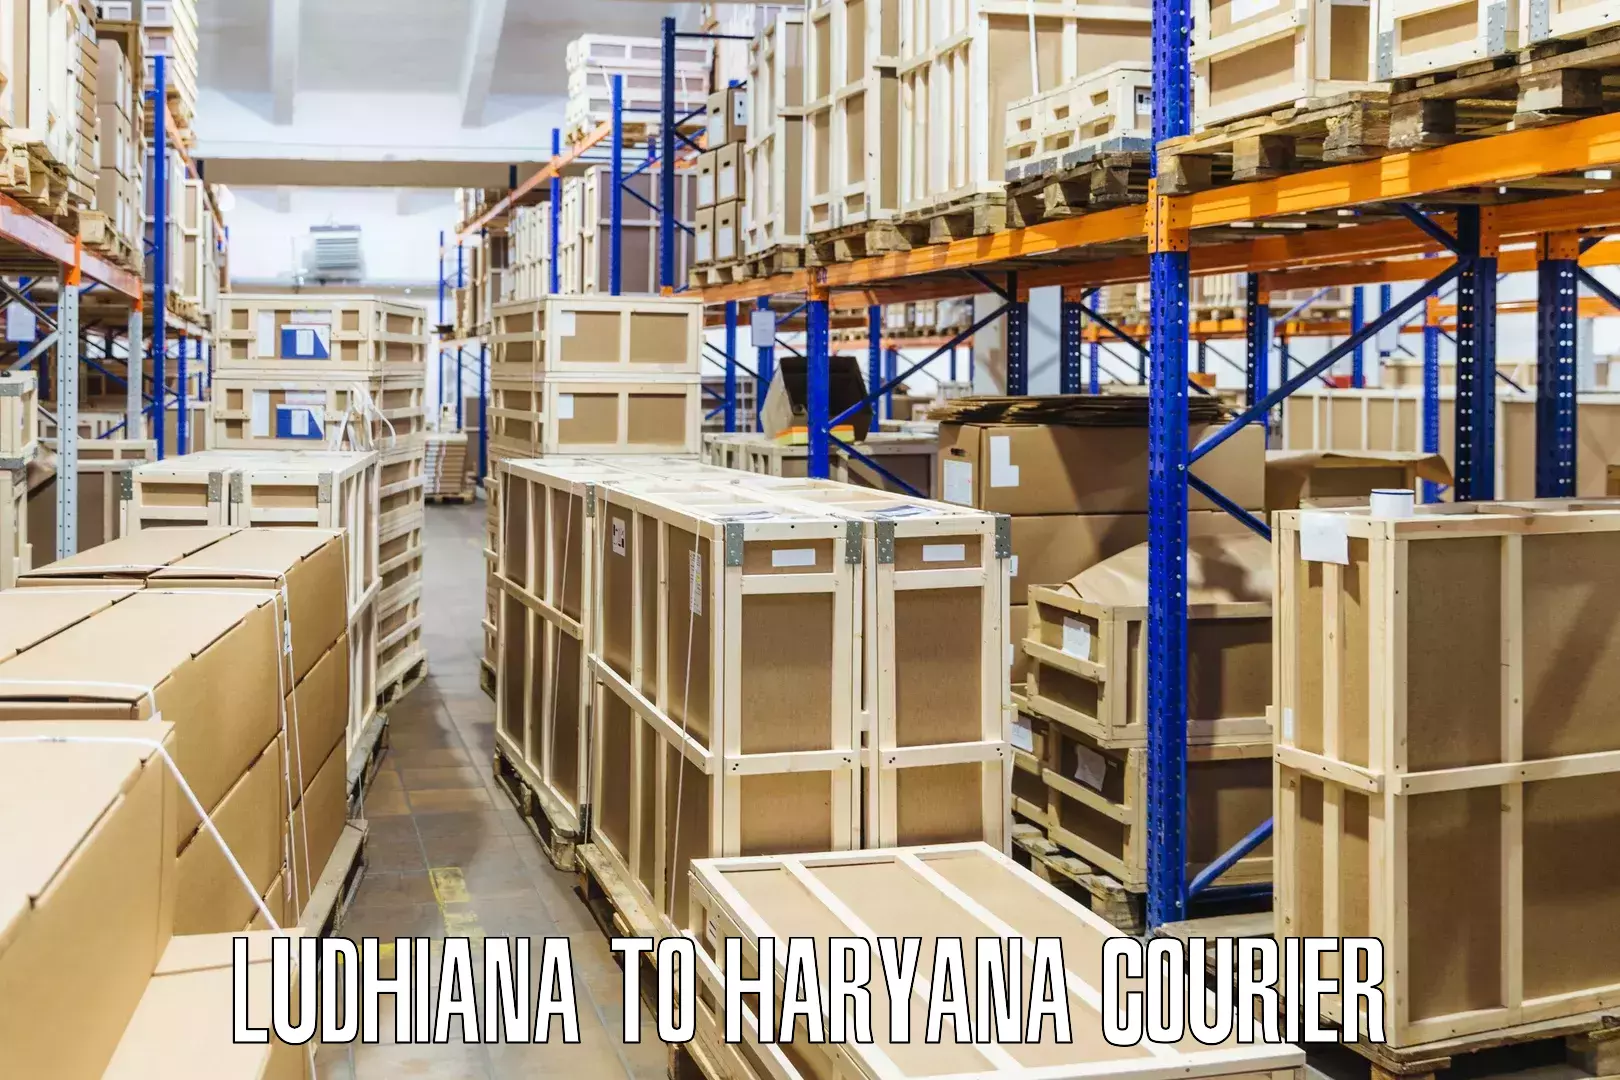 Global courier networks Ludhiana to Gohana